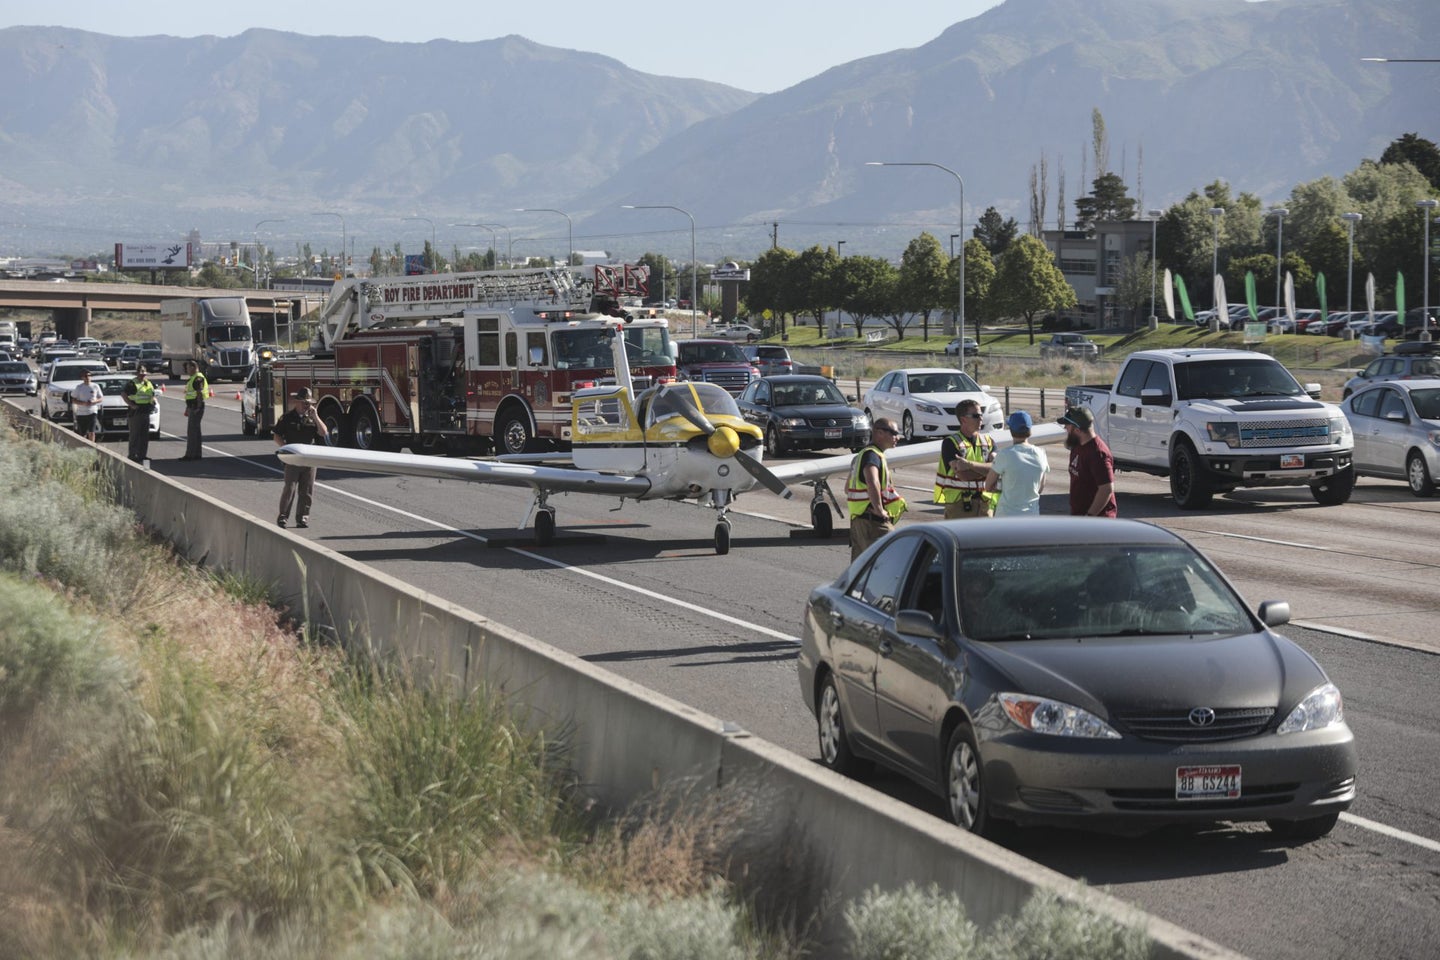 Utah: Plane Hits Car While Making Emergency Landing on Freeway